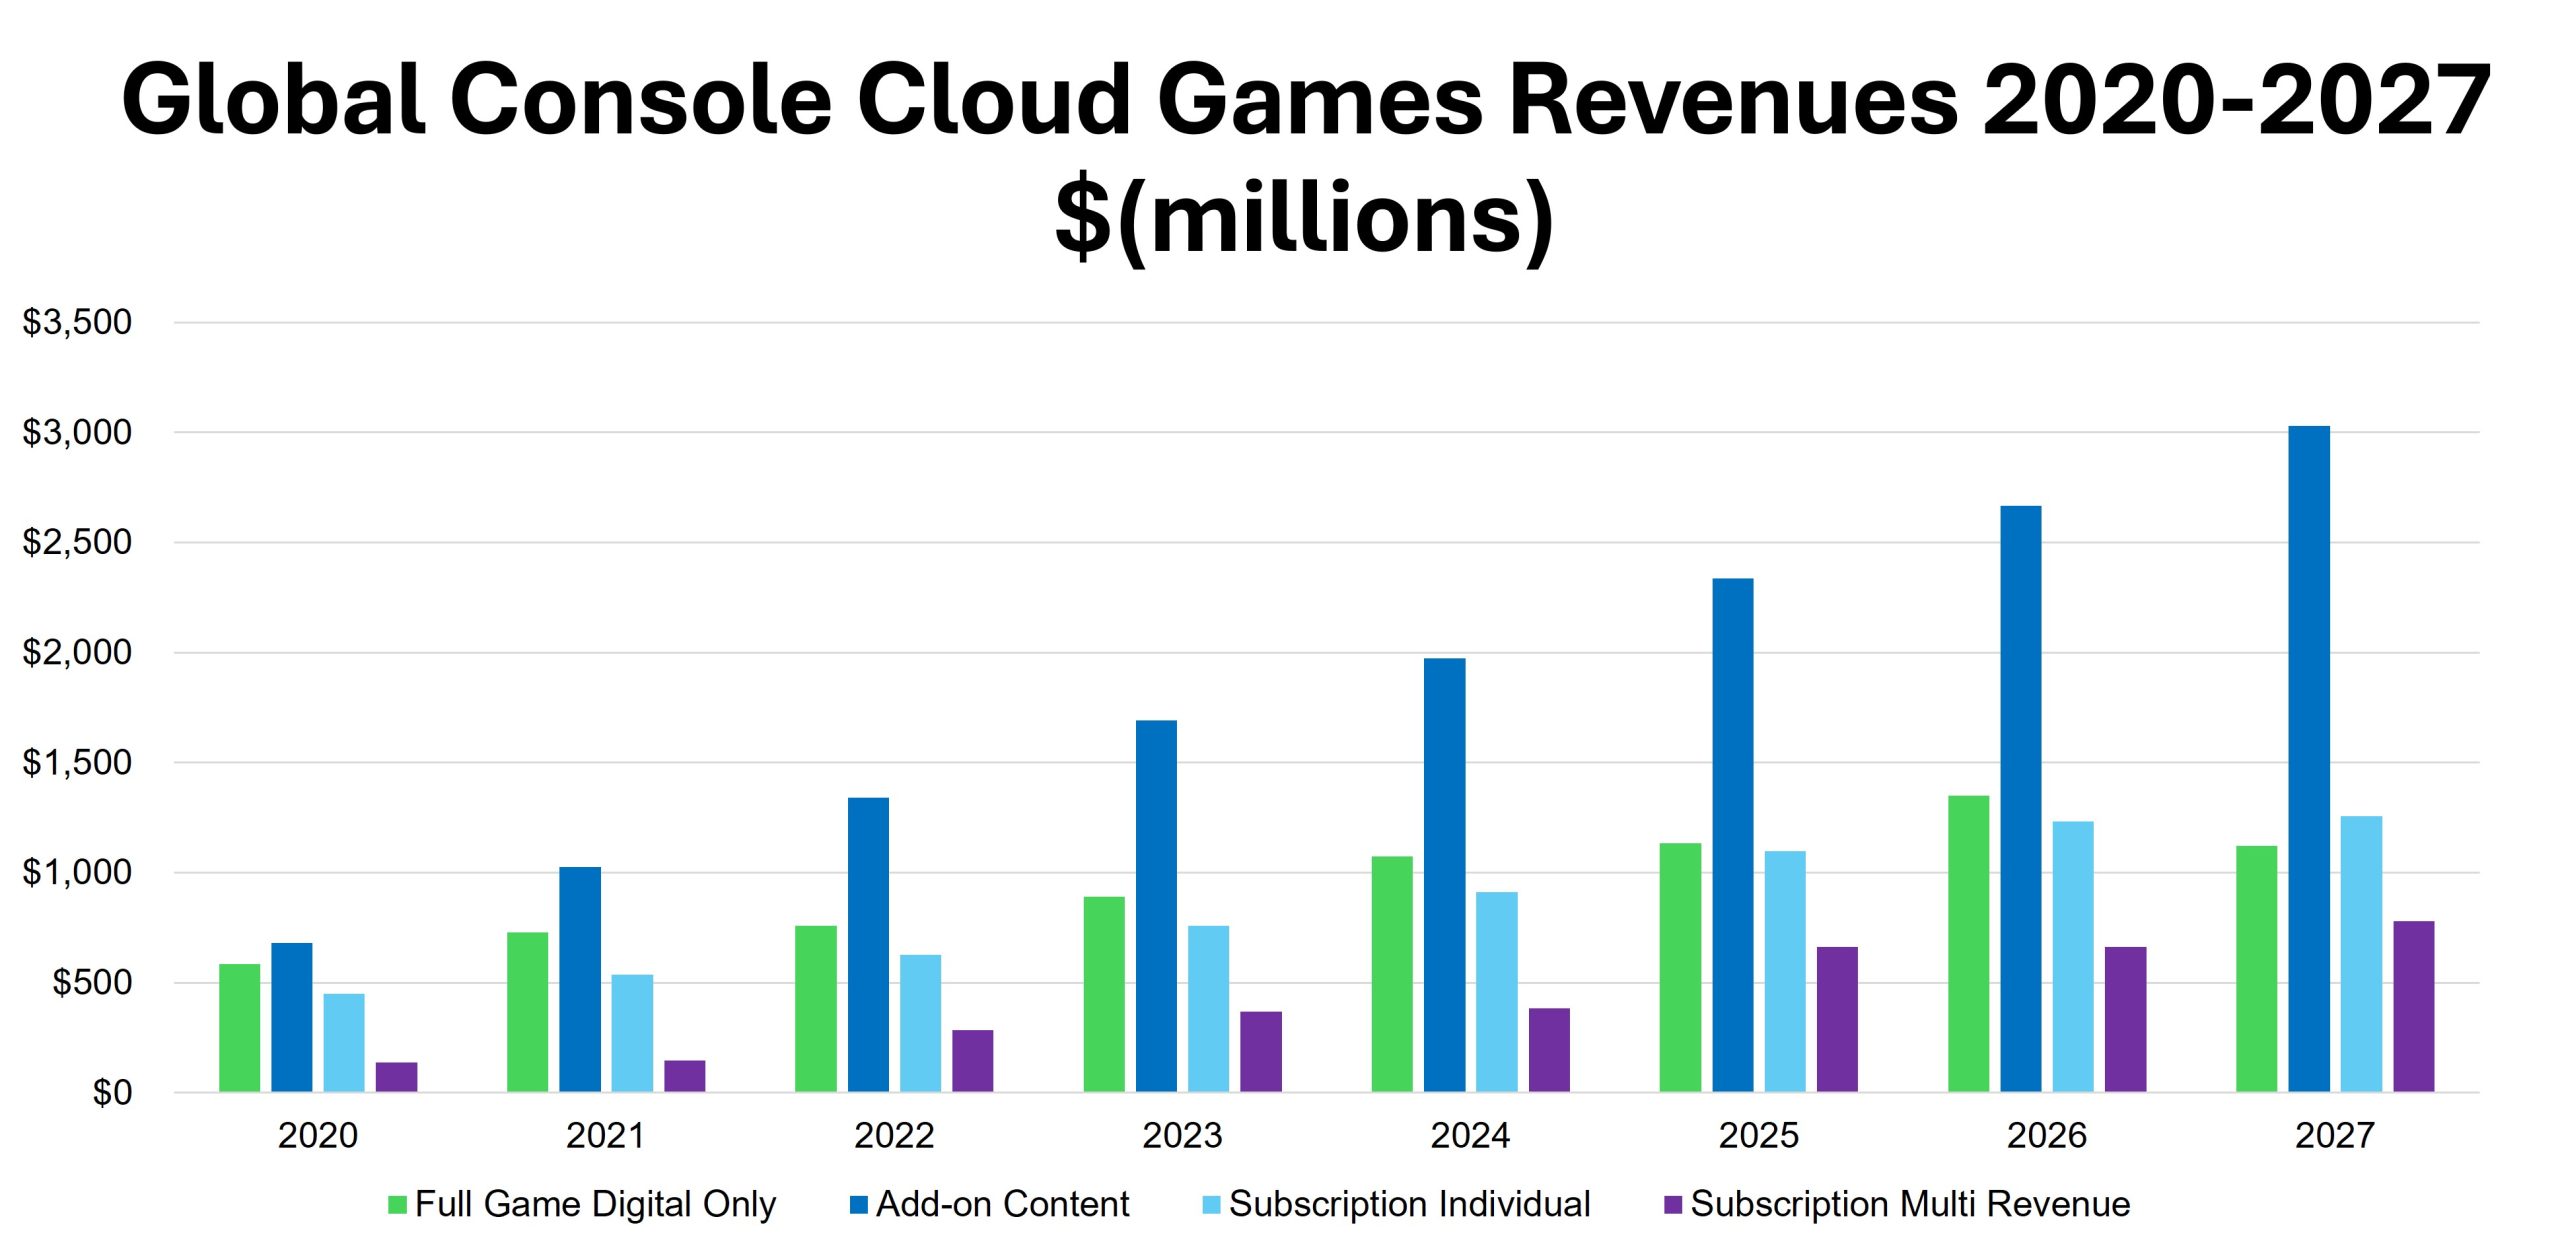 Global Console Cloud Games Revenues 2020-2027 $ (millions)